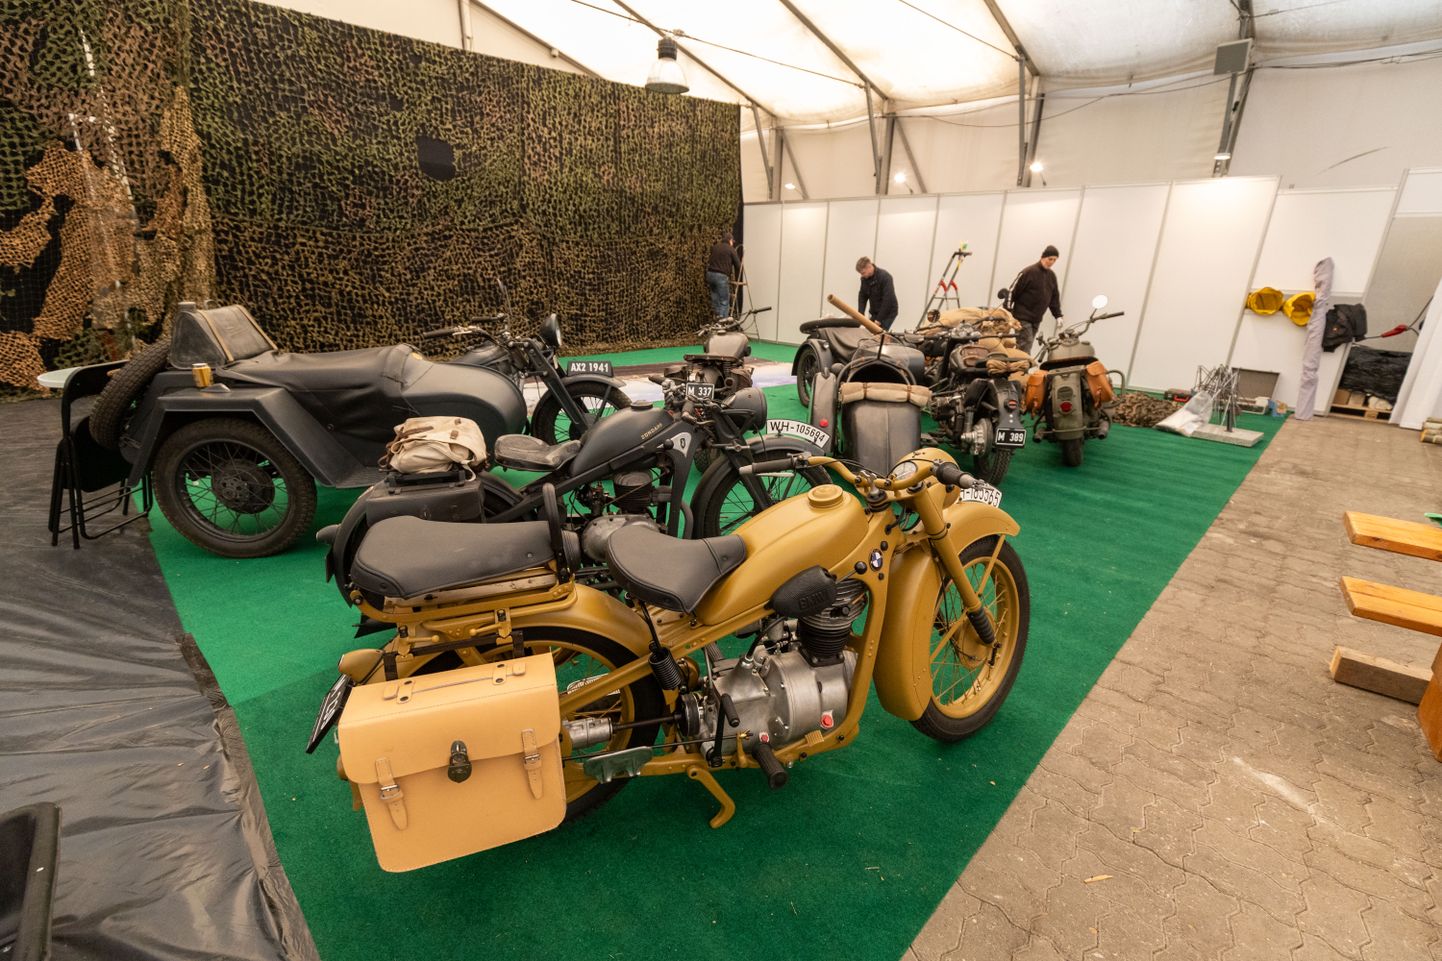 Päev enne Motoexotica algust sisustasid Unic-Moto vanamootorrattaklubi esindajad messiplatsi, kus sel korral saab näha Saksa, Rootsi ja USA päritolu militaarmasinaid.